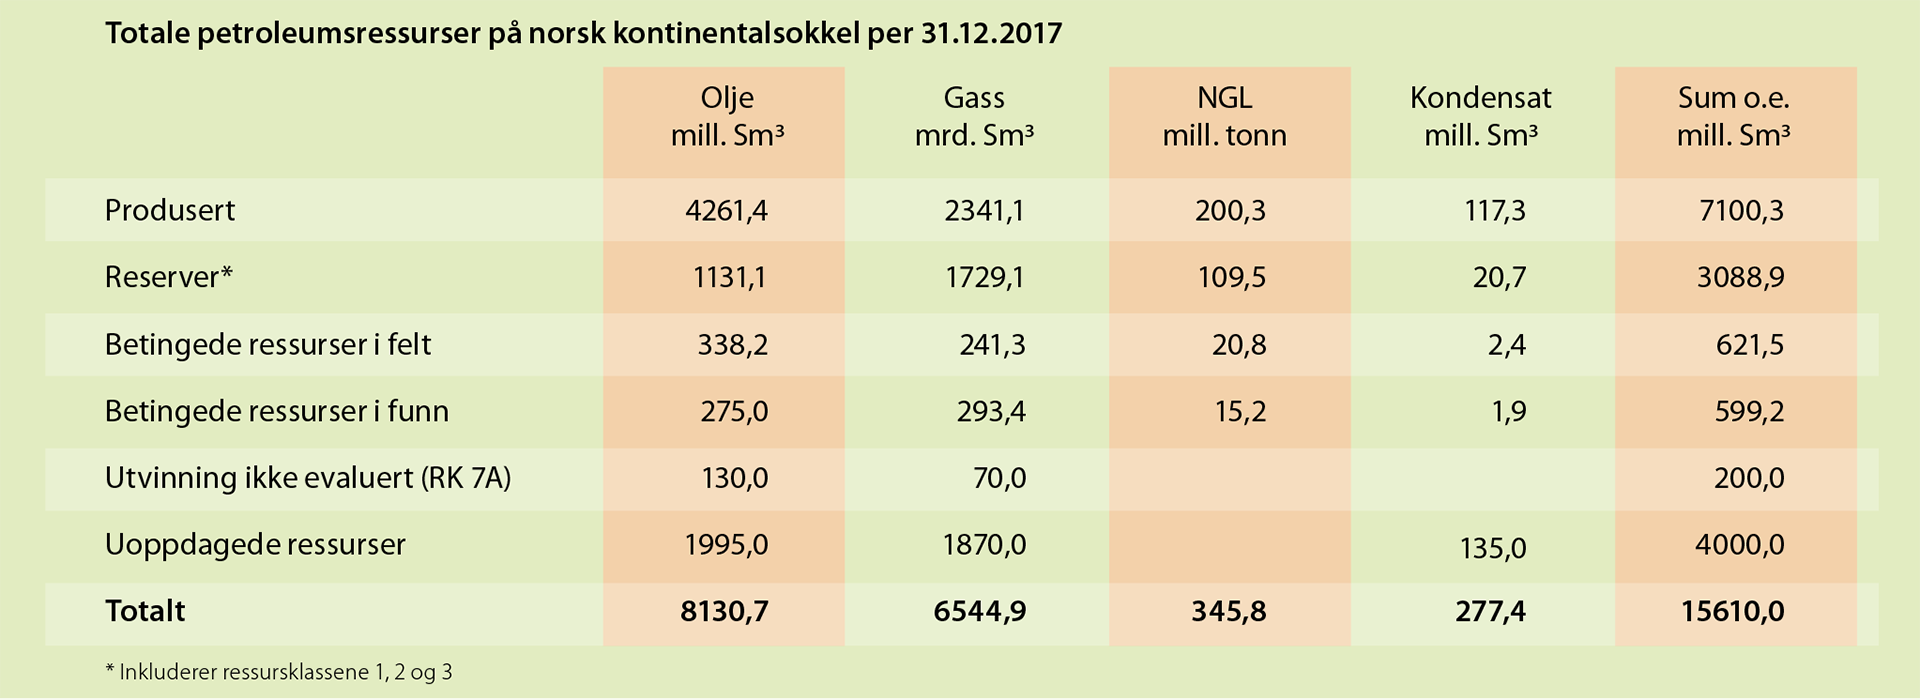 Tabell 1.1 Totale petroleumsressurser på norsk sokkel per 31.12.2017